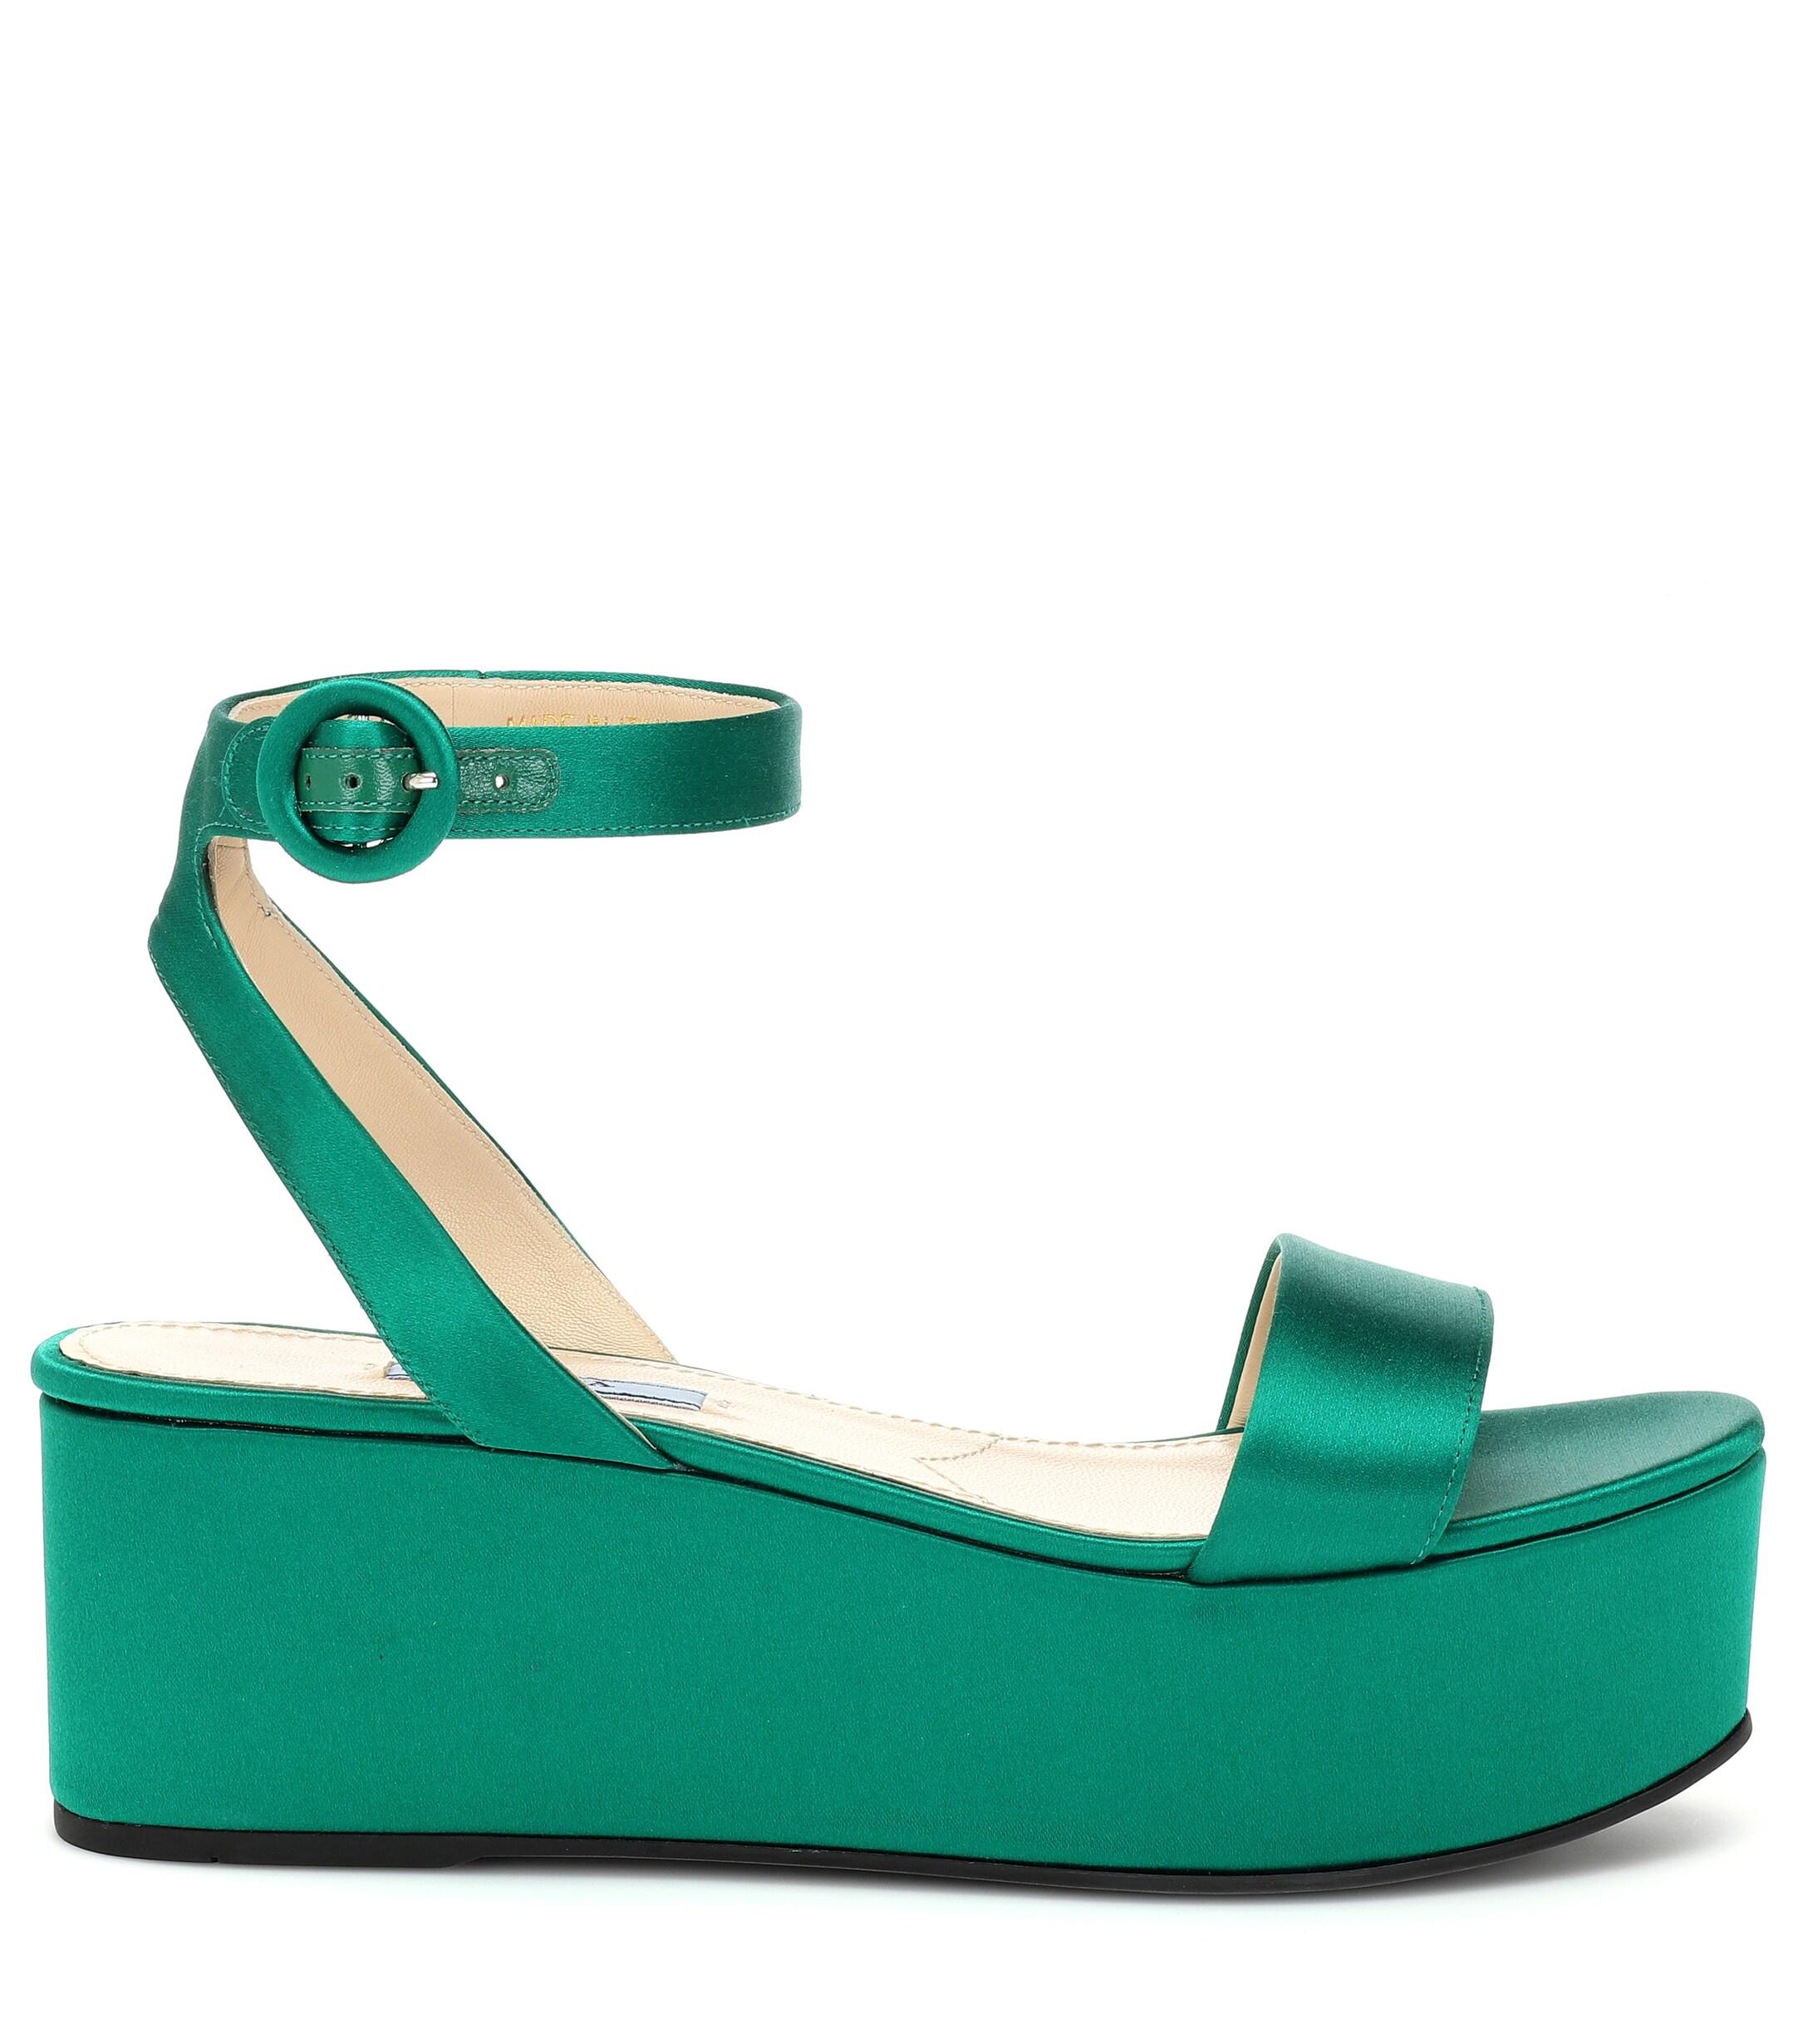 Prada Satin Platform Sandals in Green - Lyst